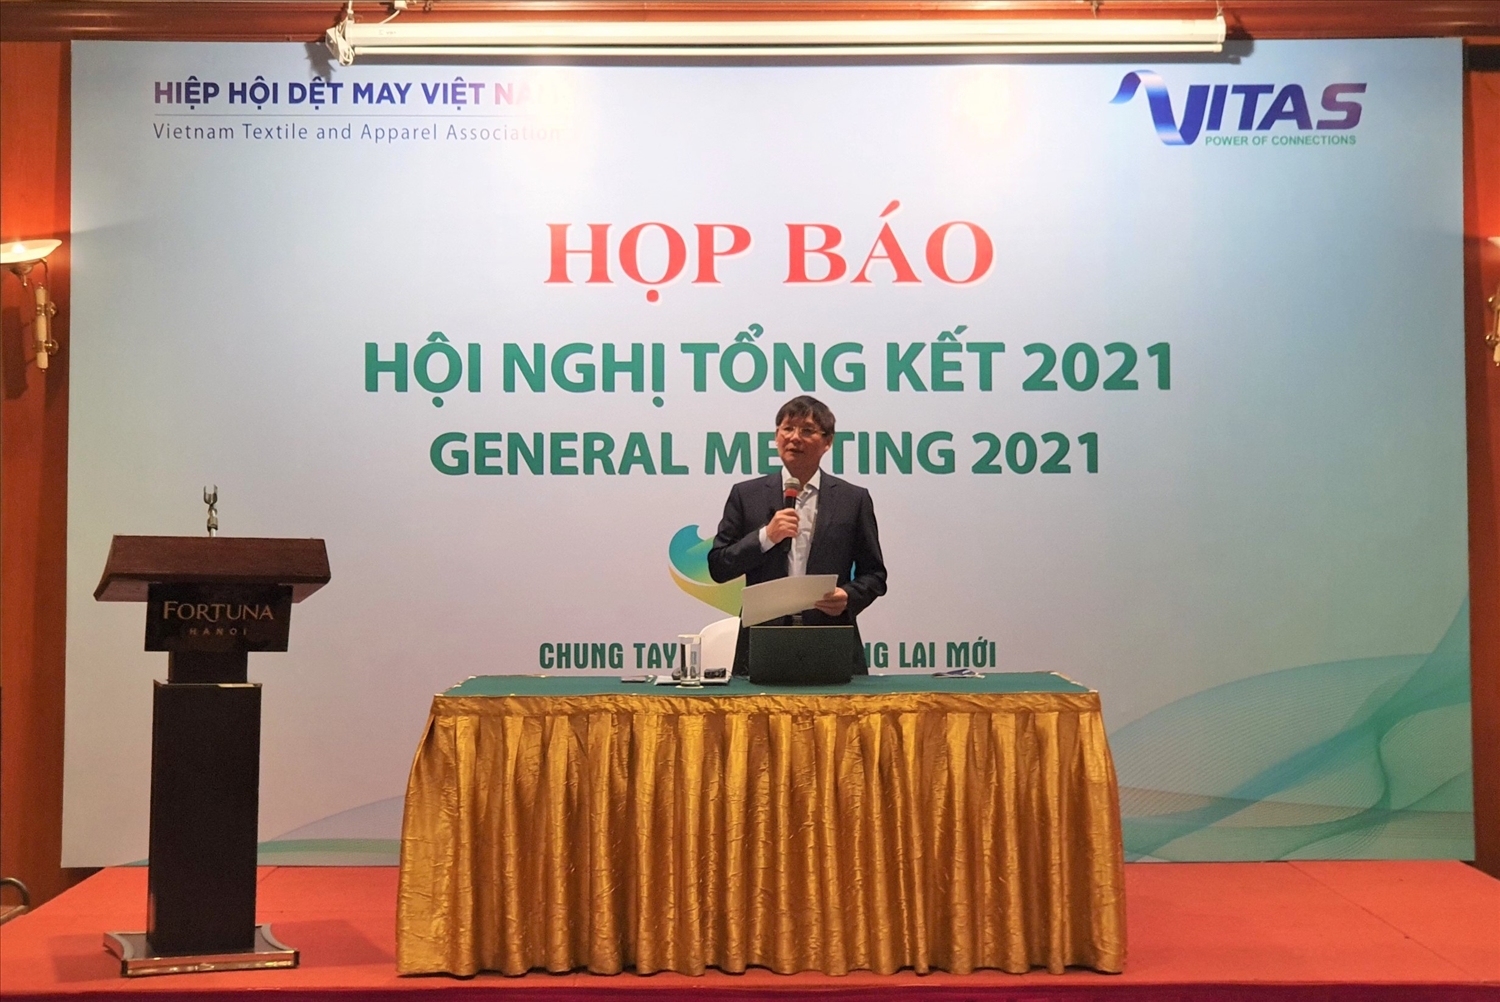 Ông Trương Văn Cẩm, Phó Chủ tịch thường trực, Kiêm Tổng Thư ký Hiệp hội Dệt may Việt Nam (Vitas) thông tin tại buổi họp báo.